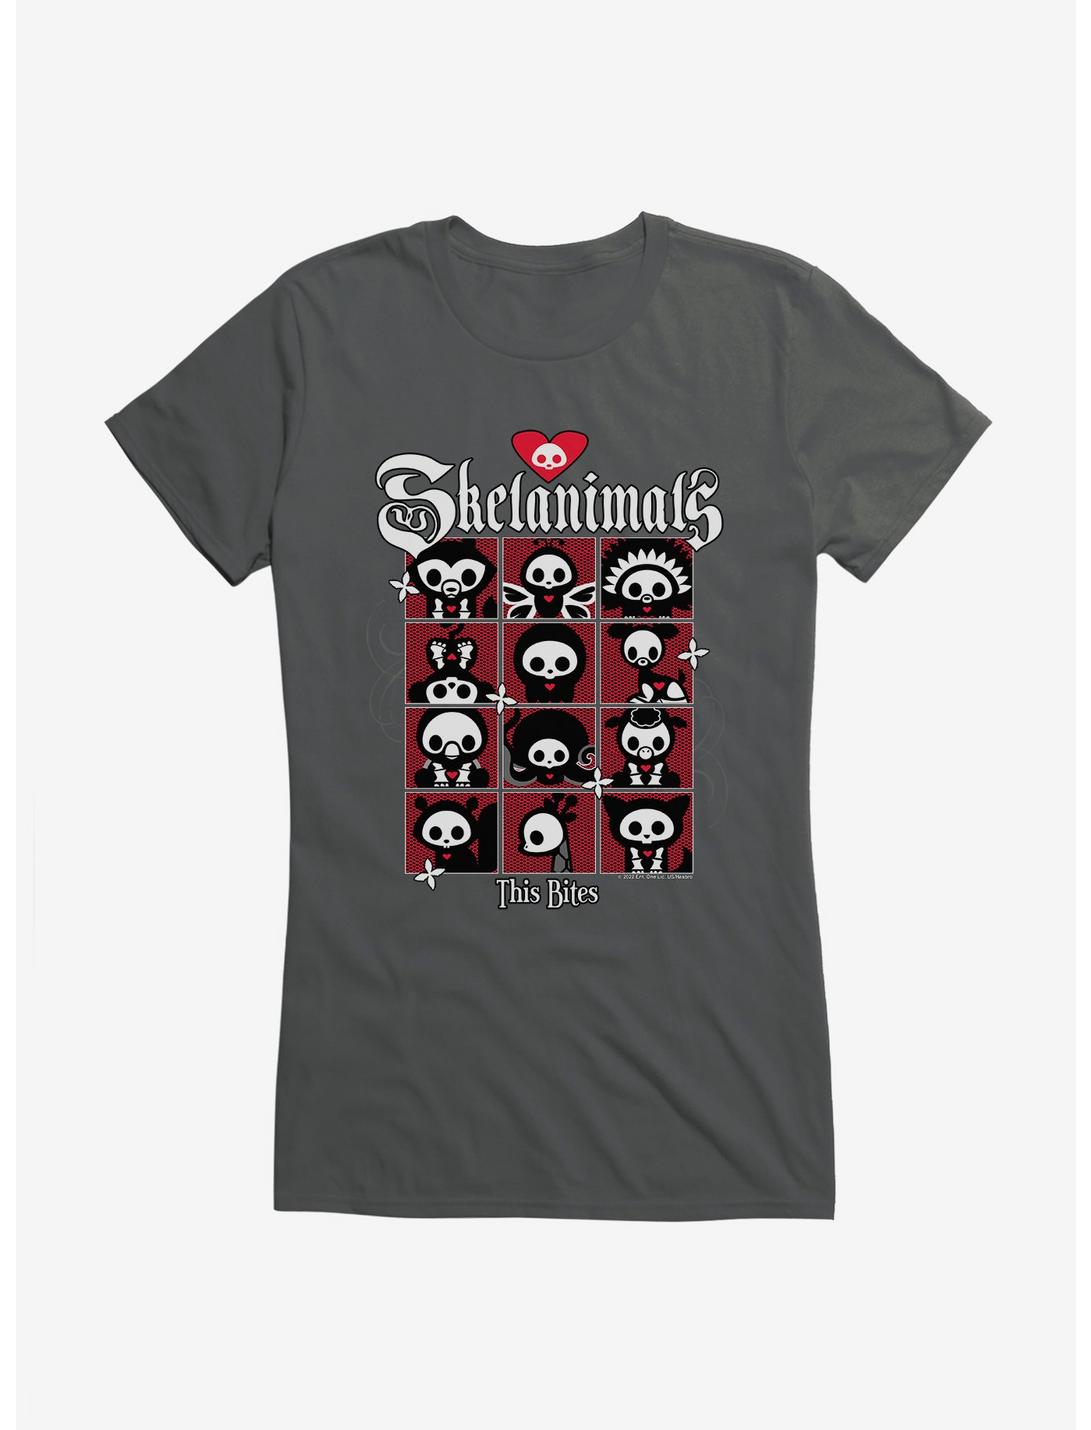 Skelanimals This Bites Girls T-Shirt, CHARCOAL, hi-res